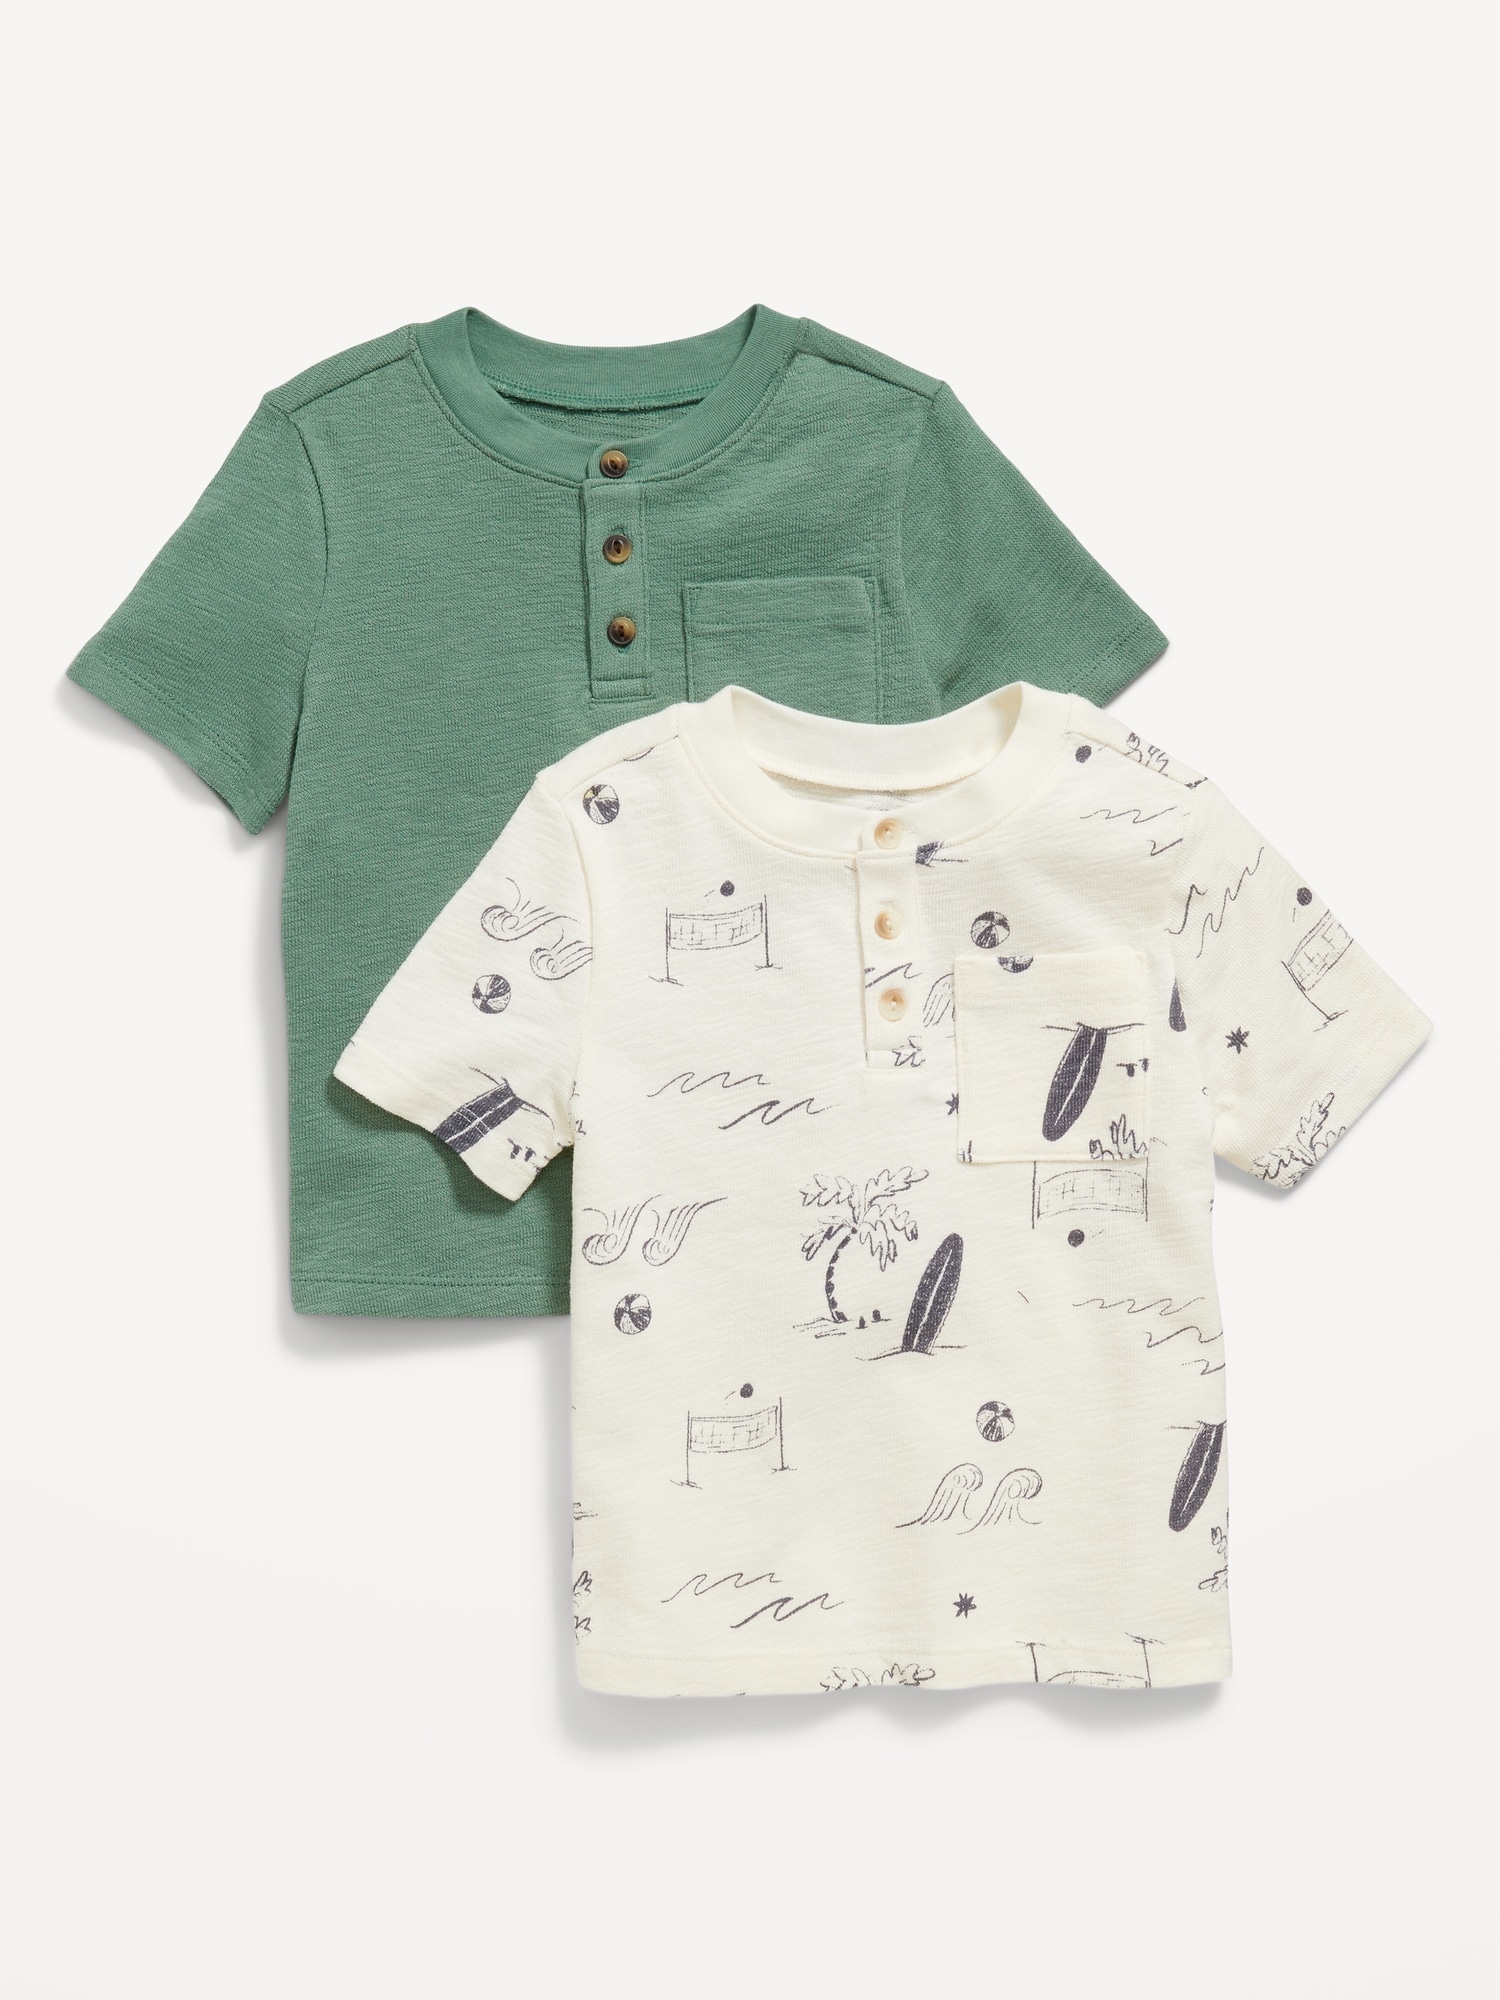 Short-Sleeve Pocket Henley T-Shirt 2-Pack for Toddler Boys